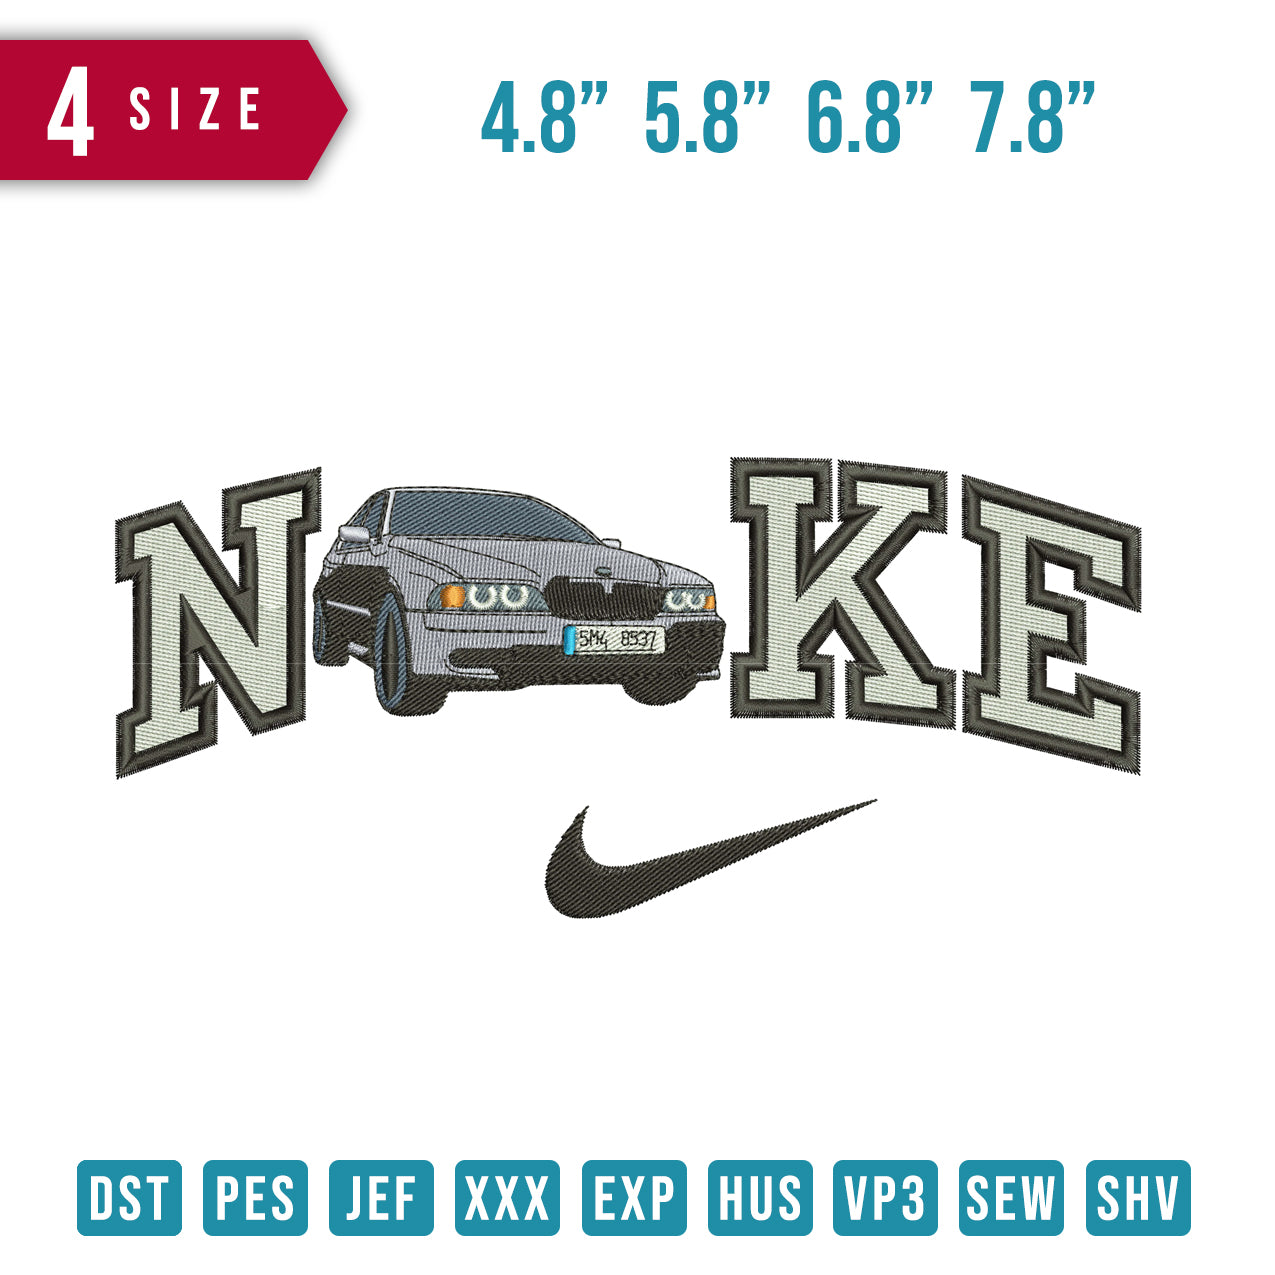 Nike Car 5m4